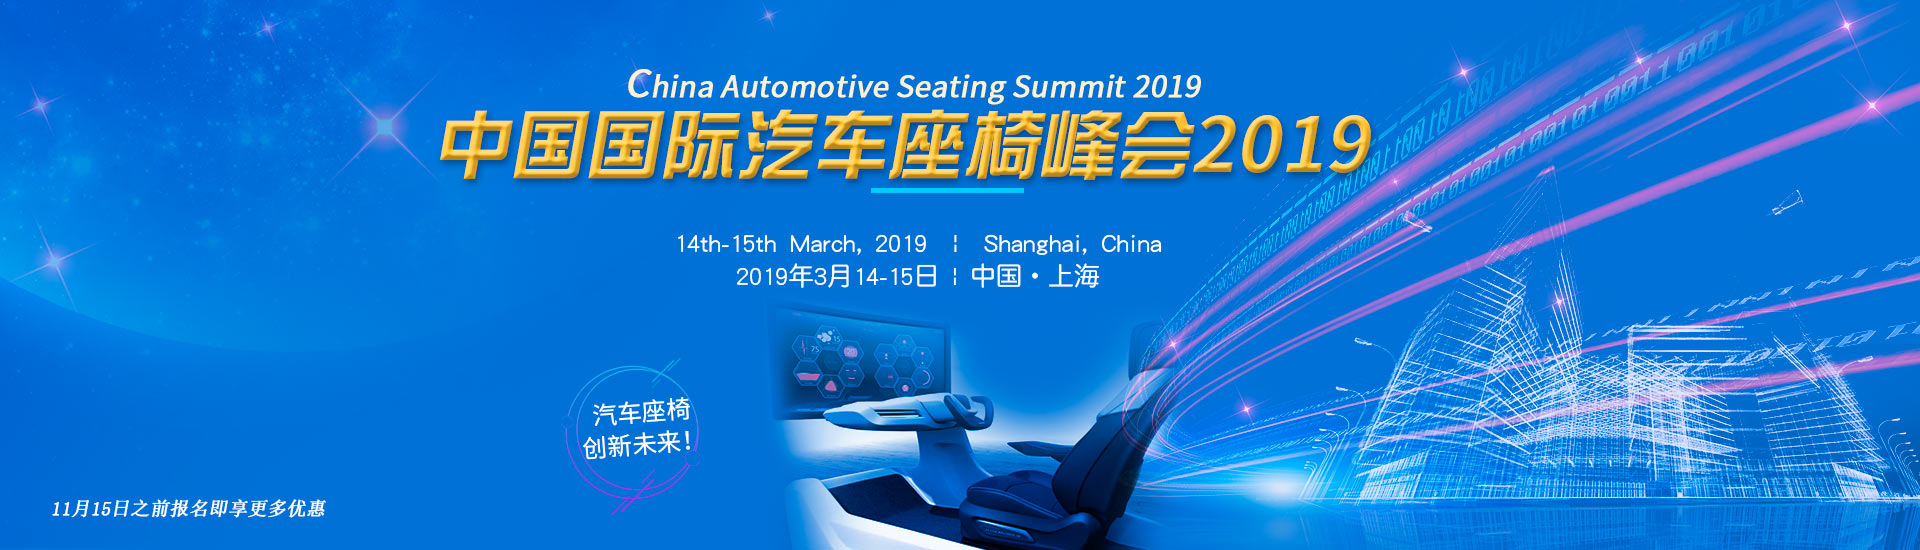 China Automotive Seating Summit 2019